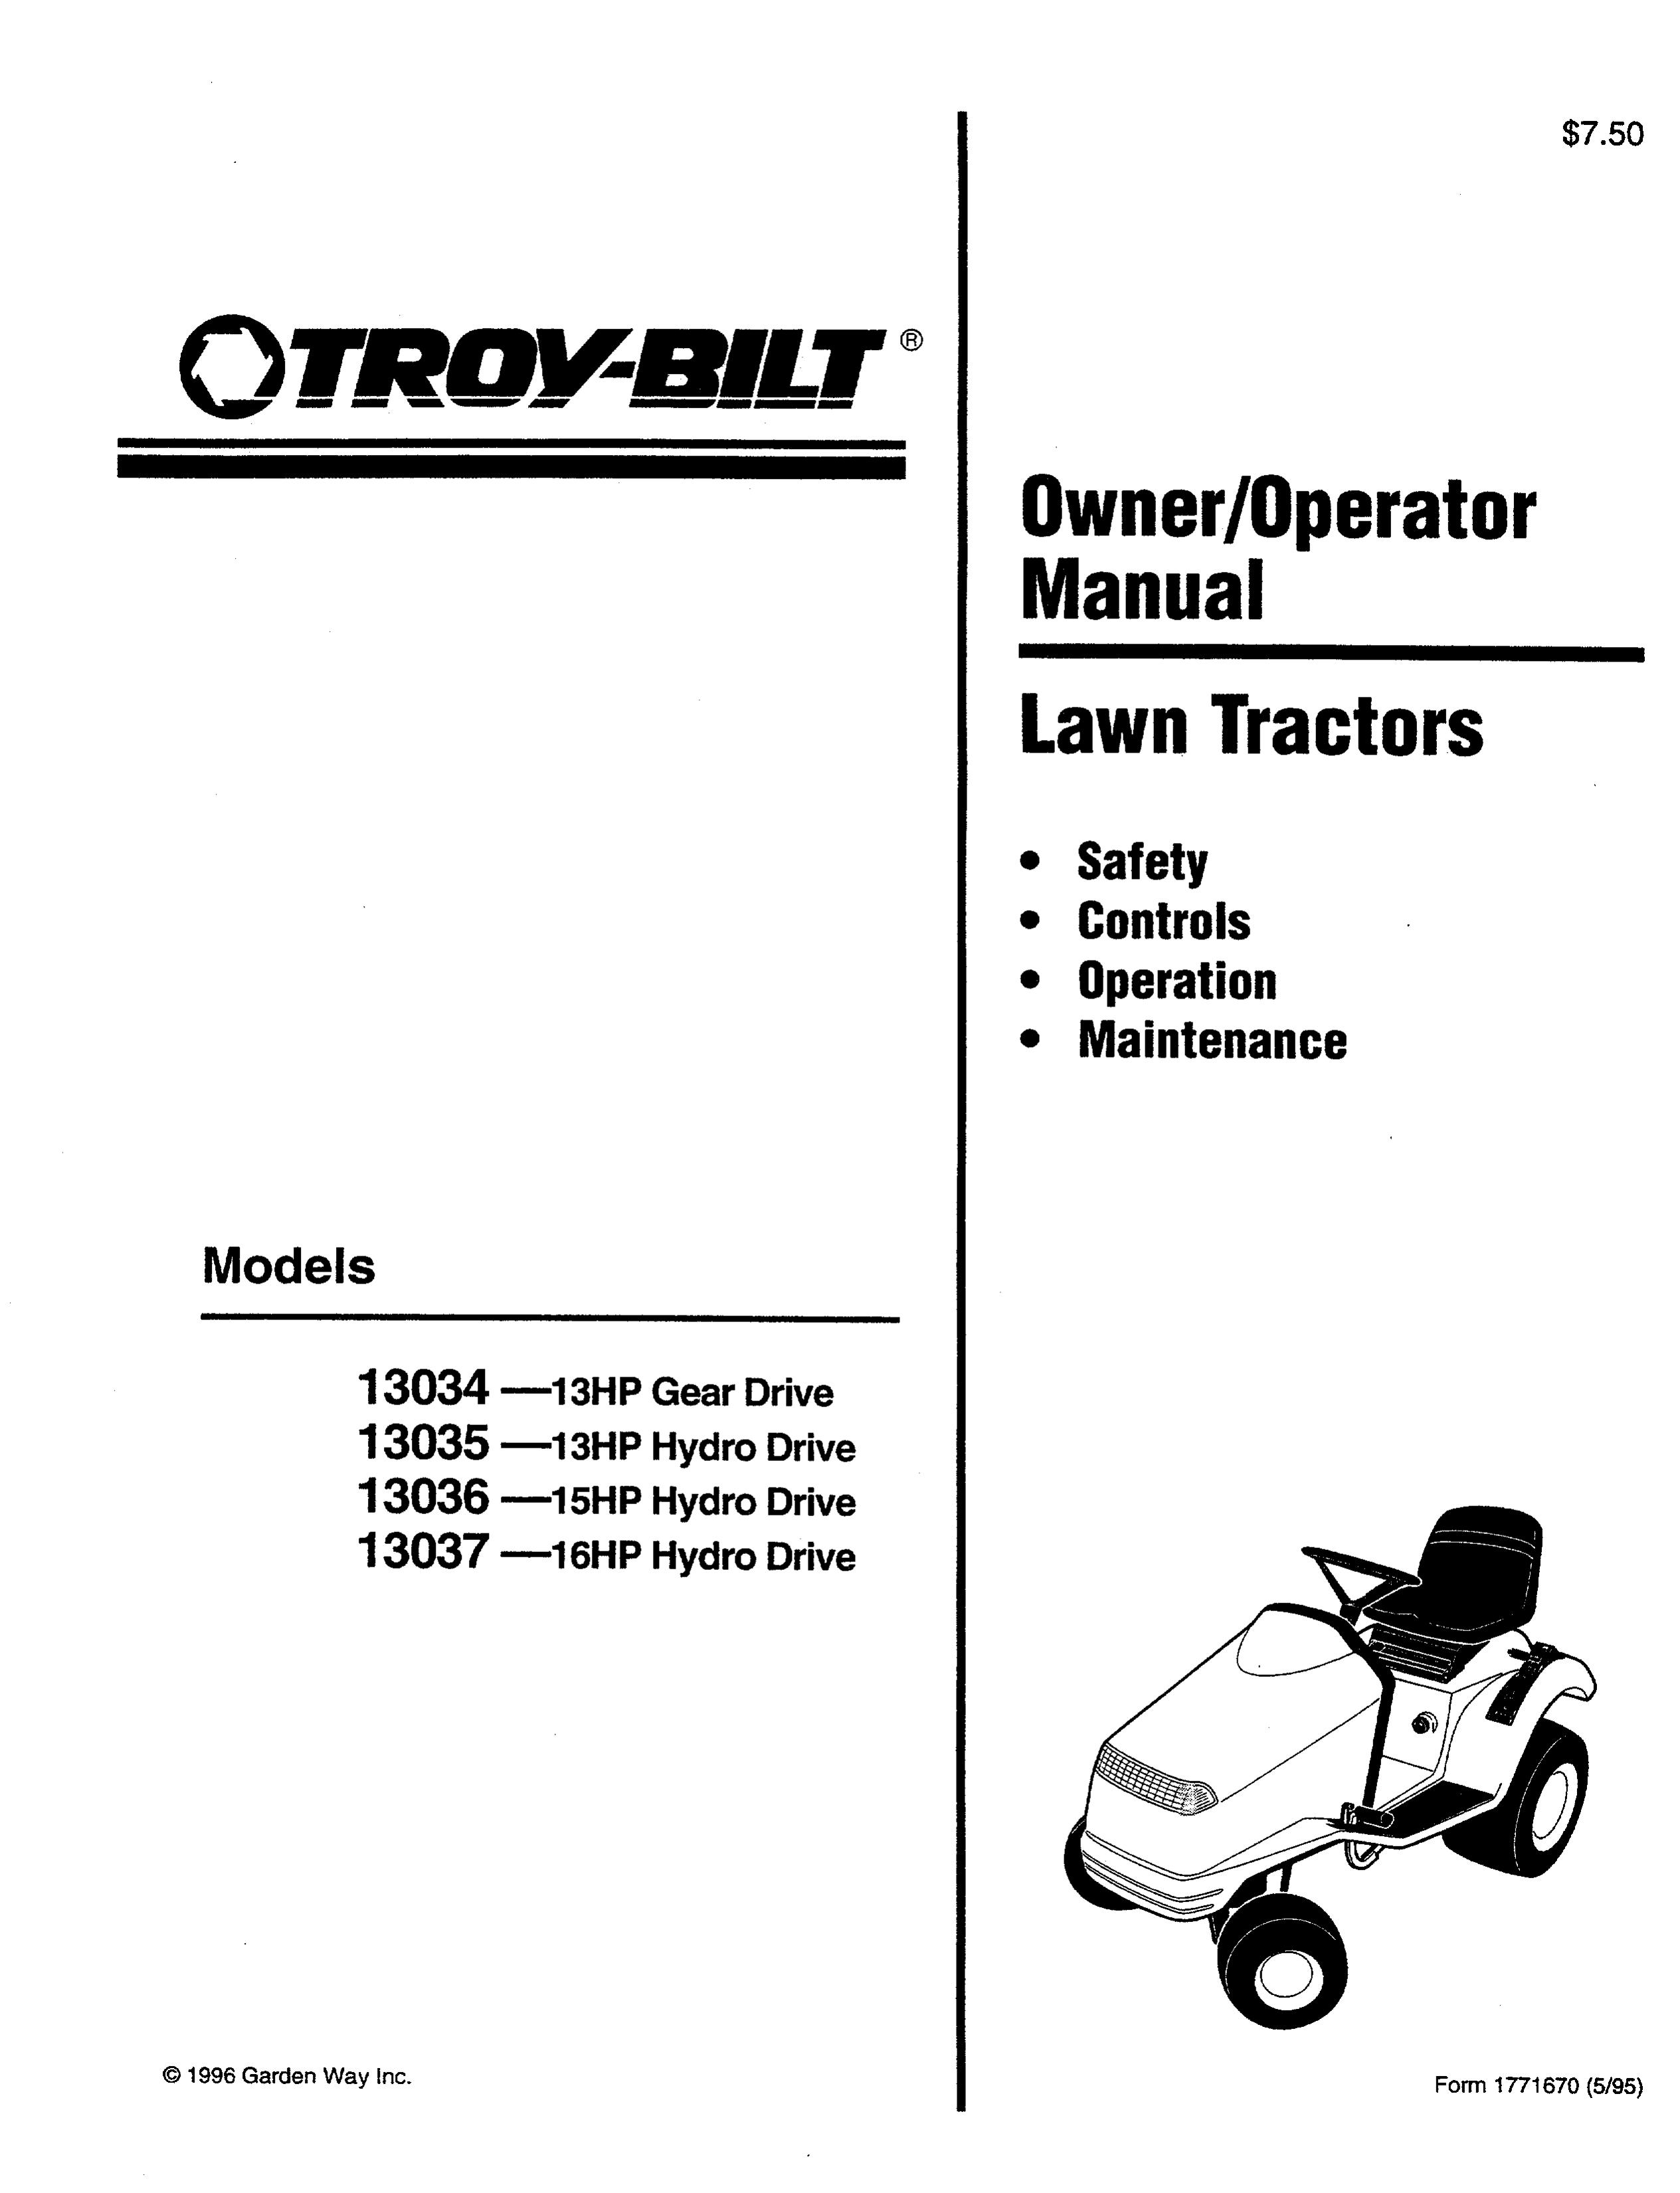 Troy-Bilt 13036 Lawn Mower User Manual